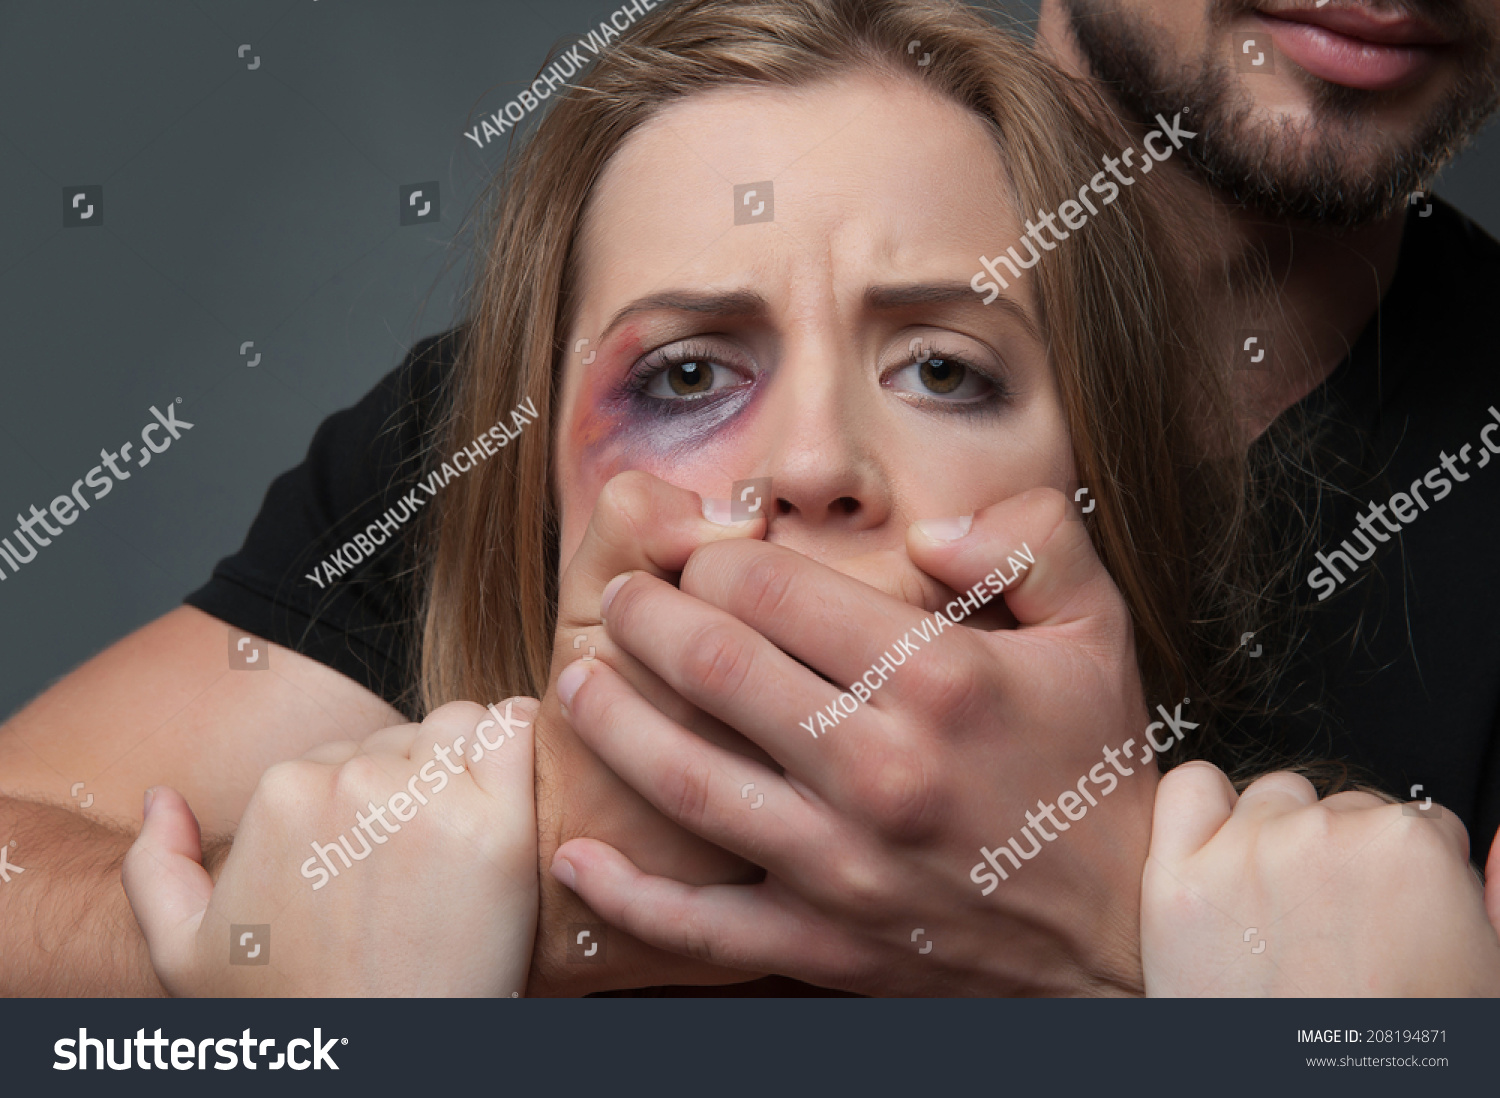 Мужчина закрывает рот рукой женщине